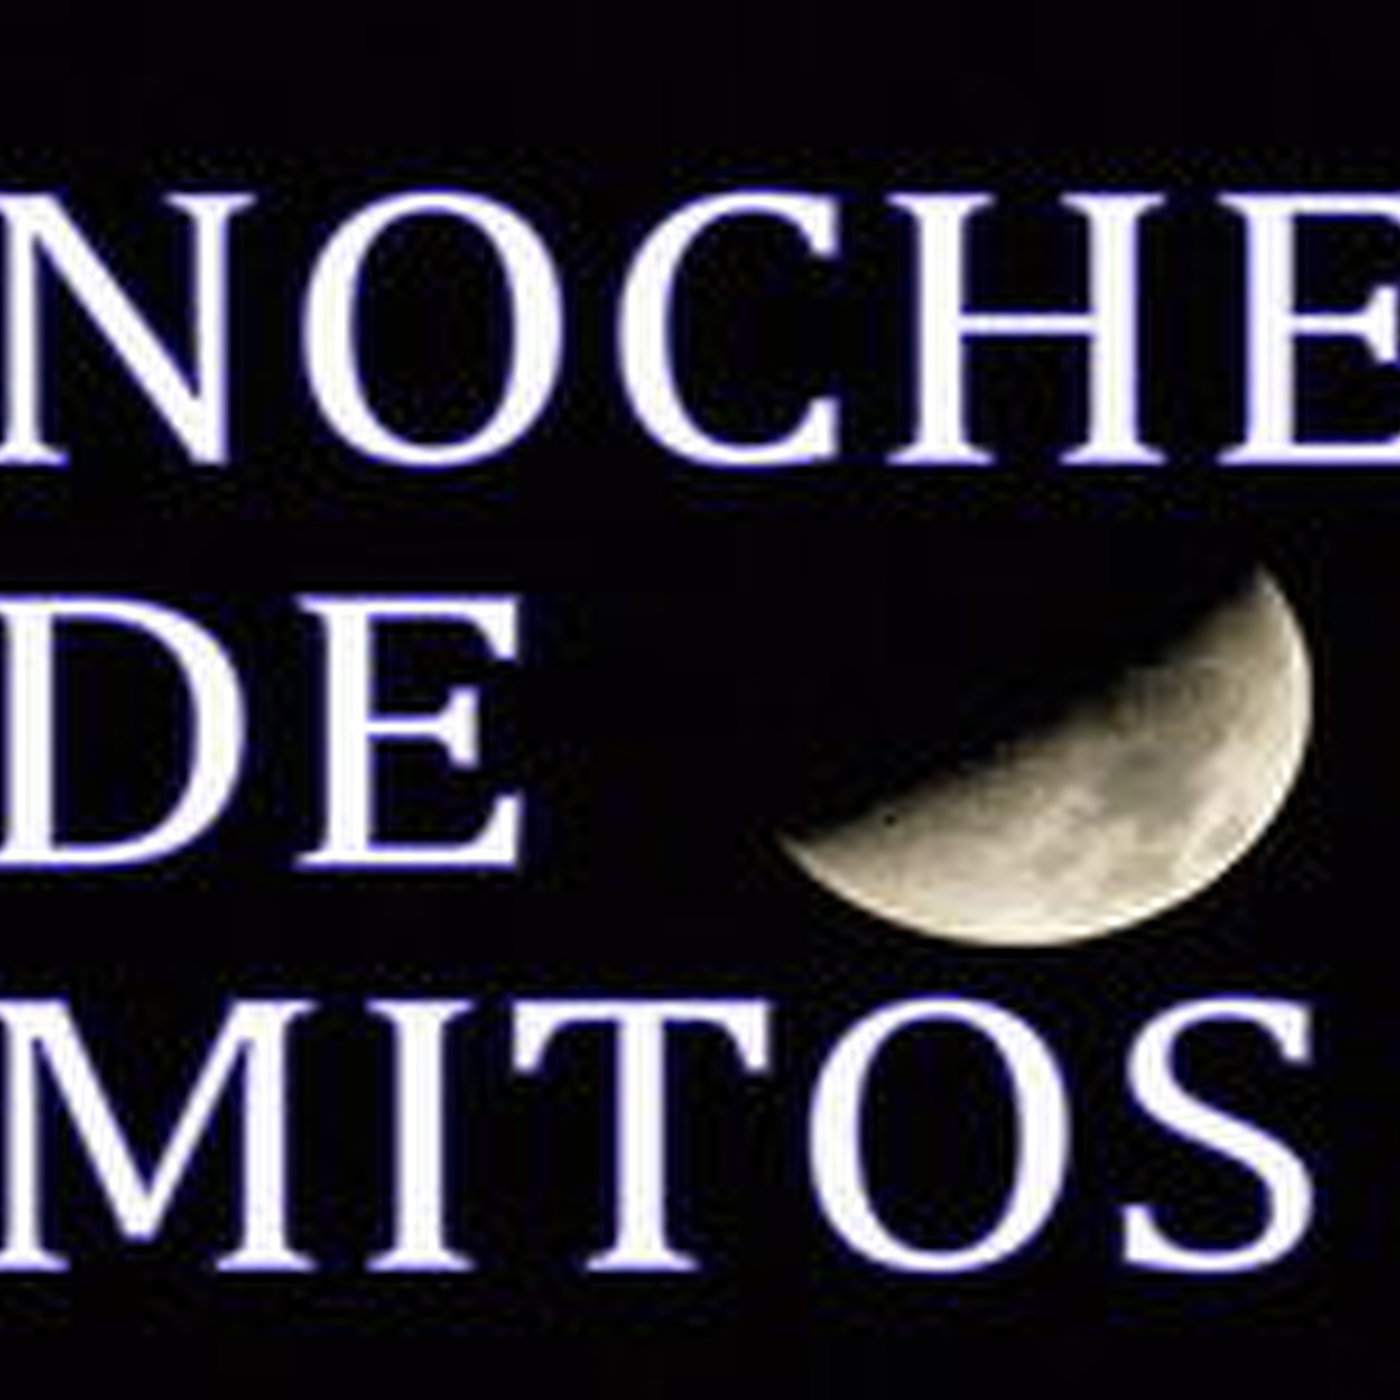 Noche de Mitos (17) Mitos sobre los sueños - Expedientes X, entrevista a Jose Angel García Díaz